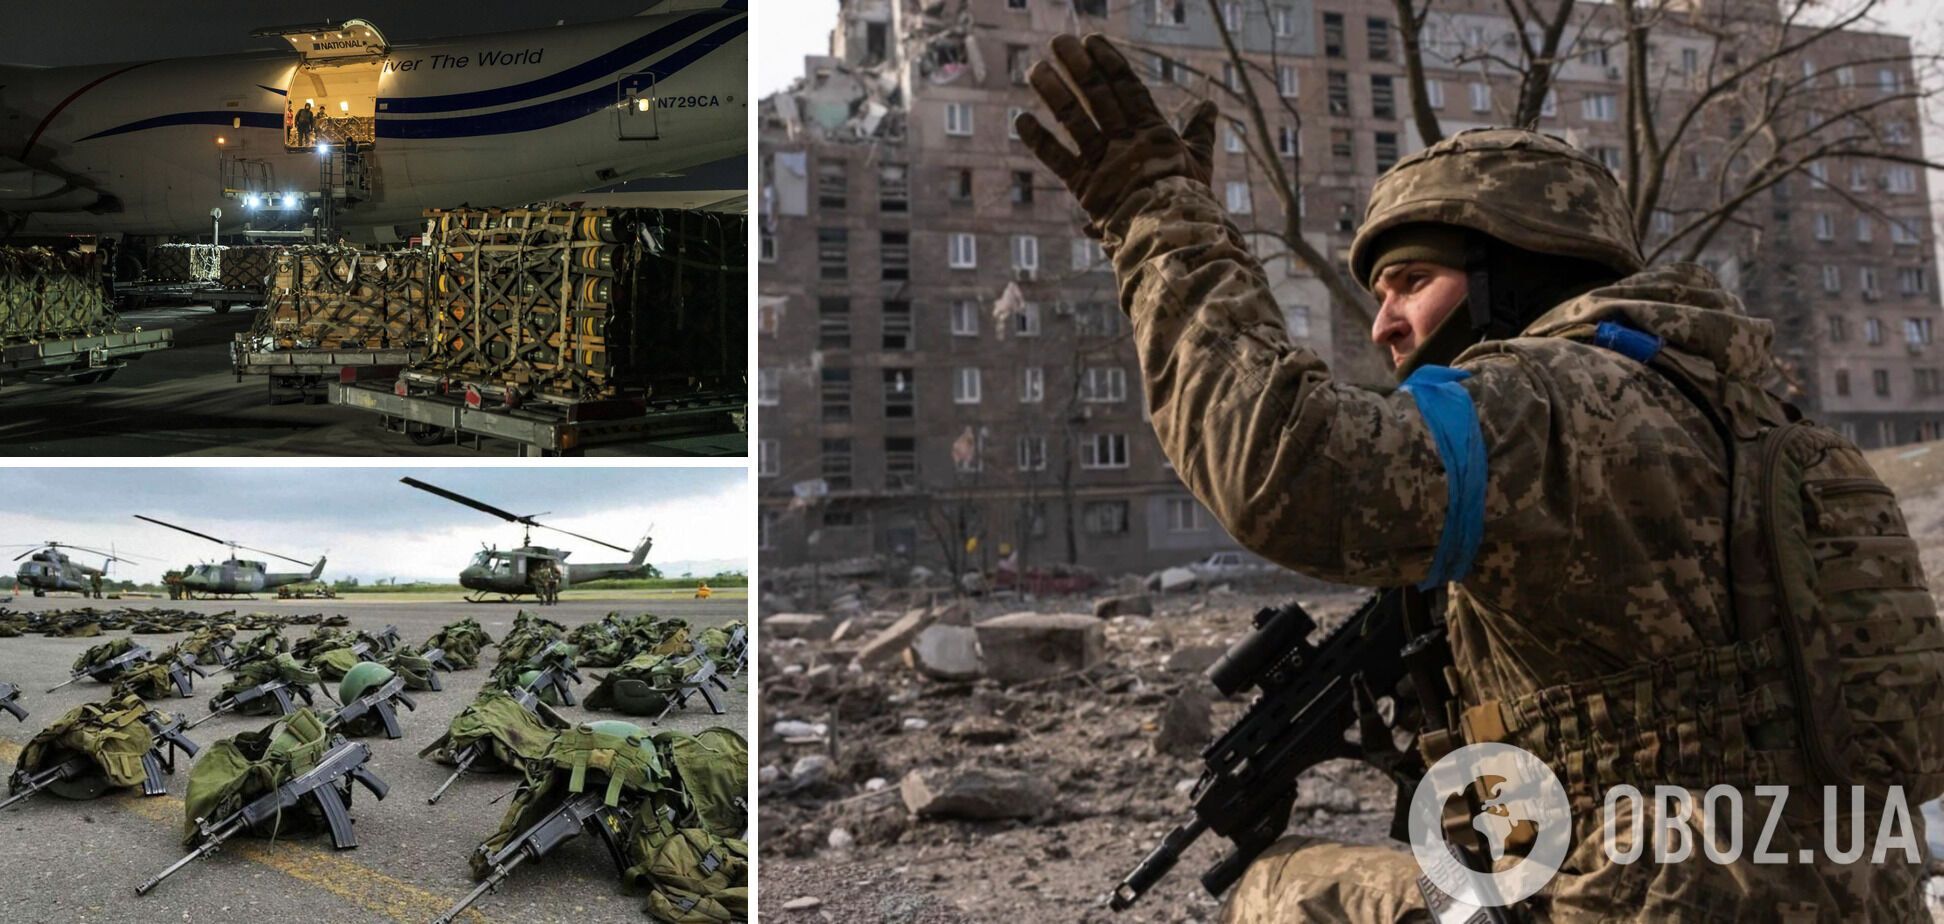 Завдяки ленд-лізу зброю Україні США і союзники зможуть поставляти швидше і безперешкодно